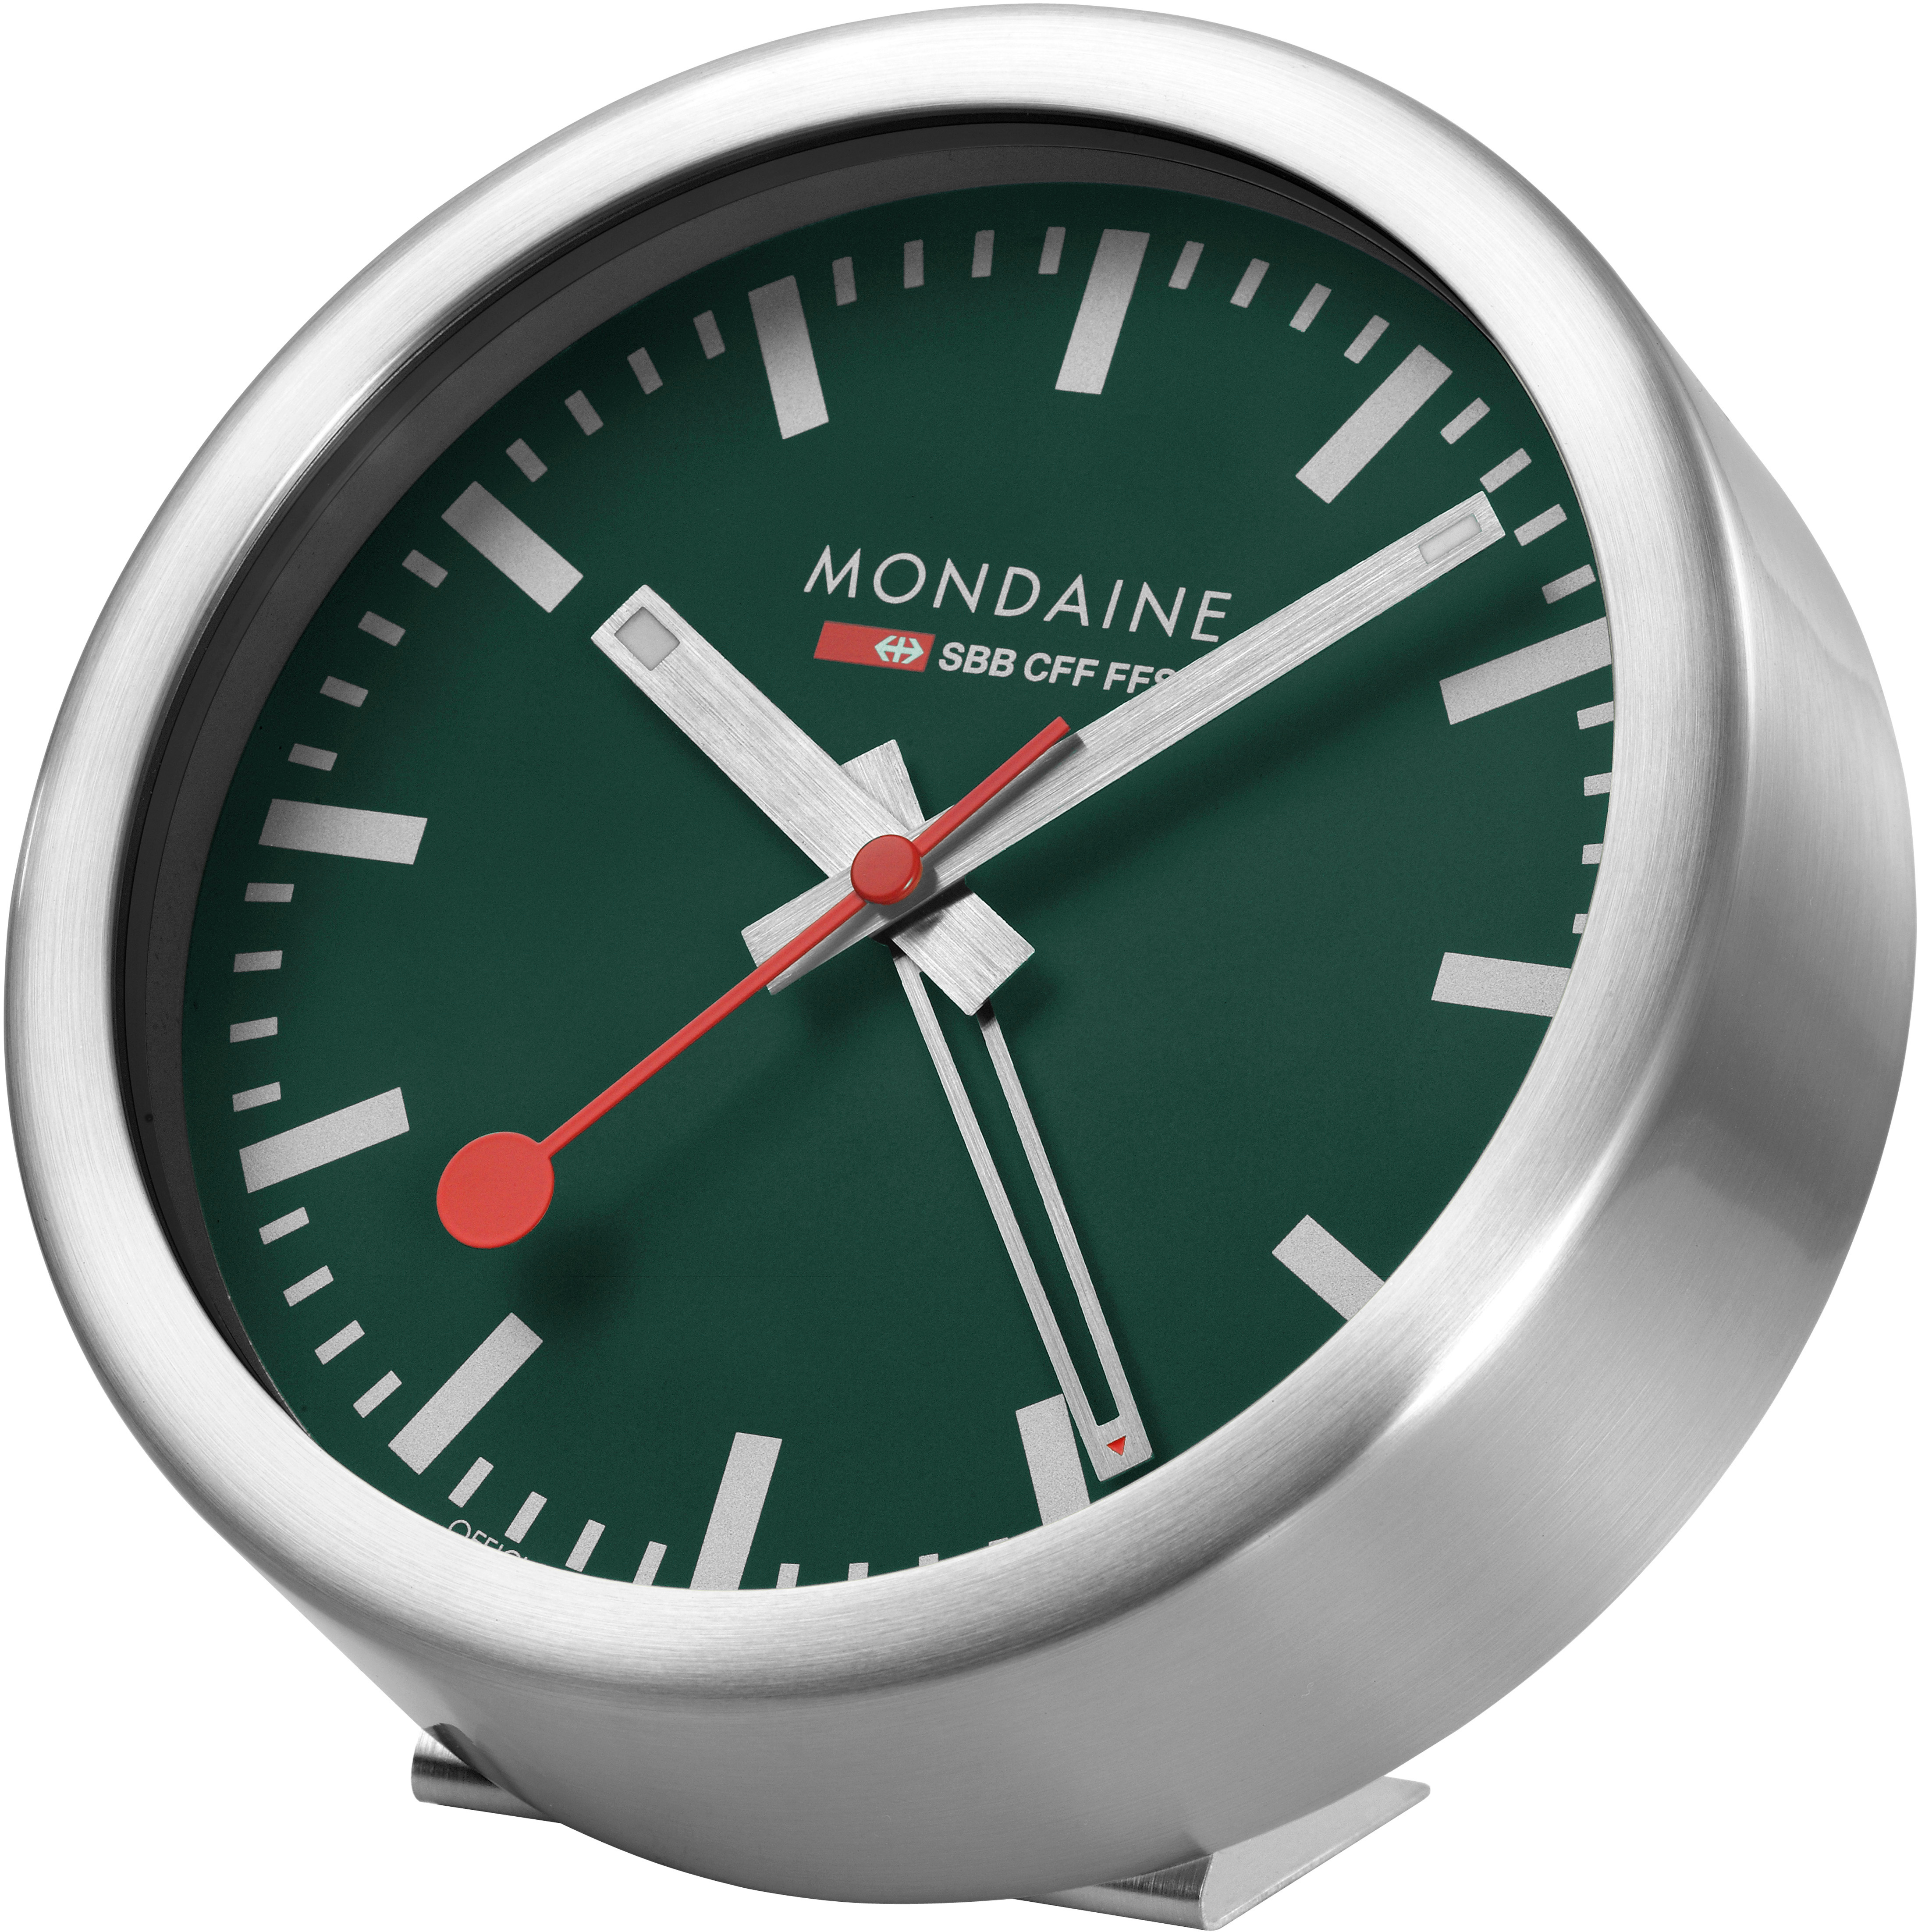 MONDAINE Mur / Horloge de table 125mm A997.66SBV.1 vert, réveil